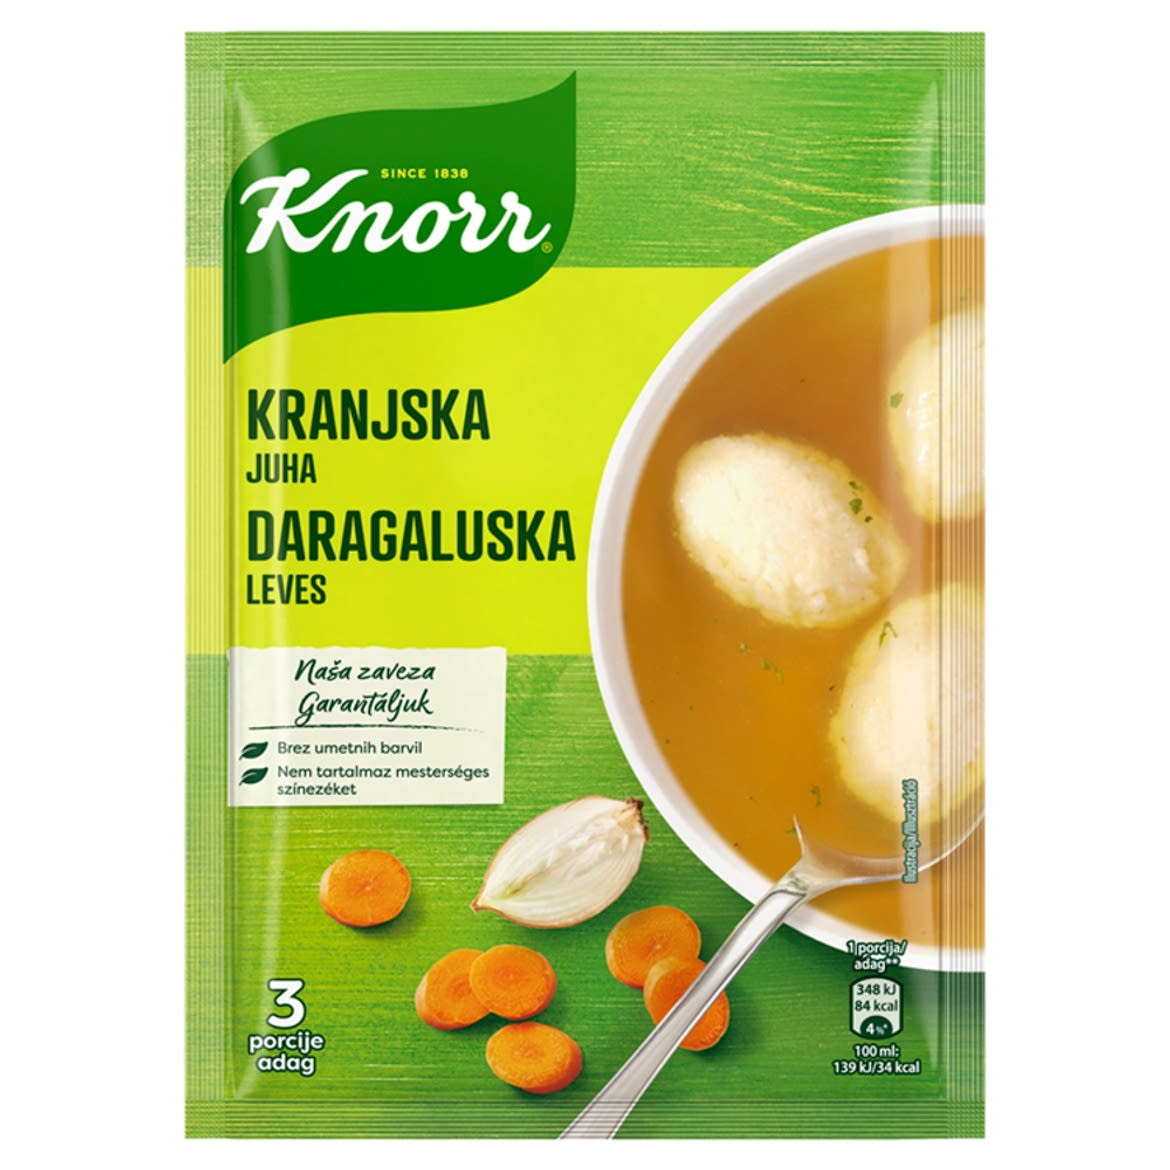 Knorr daragaluska leves 62 g